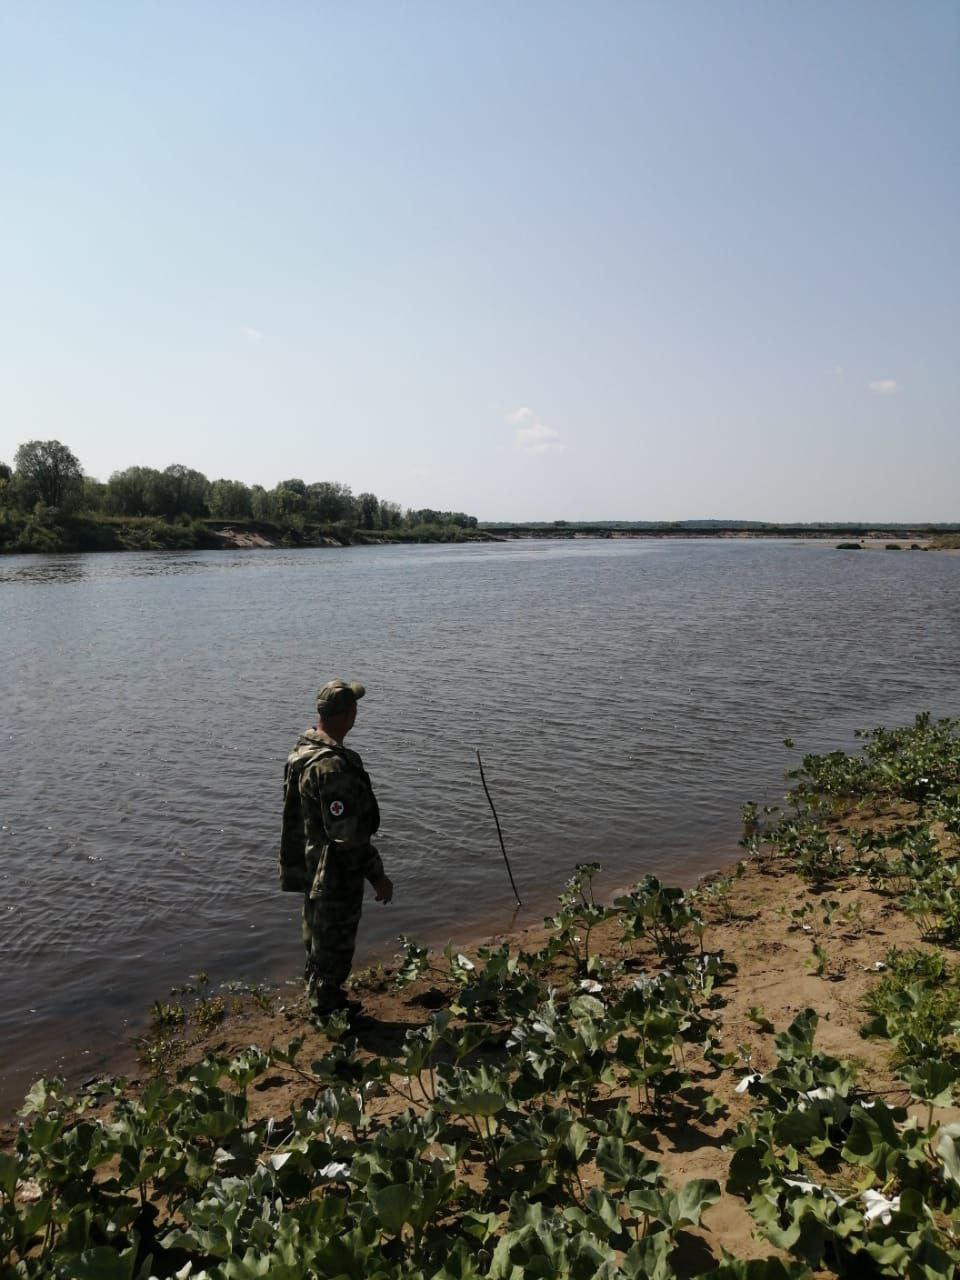 В Орловском районе в реке утонул молодой мужчина, не умевший плавать